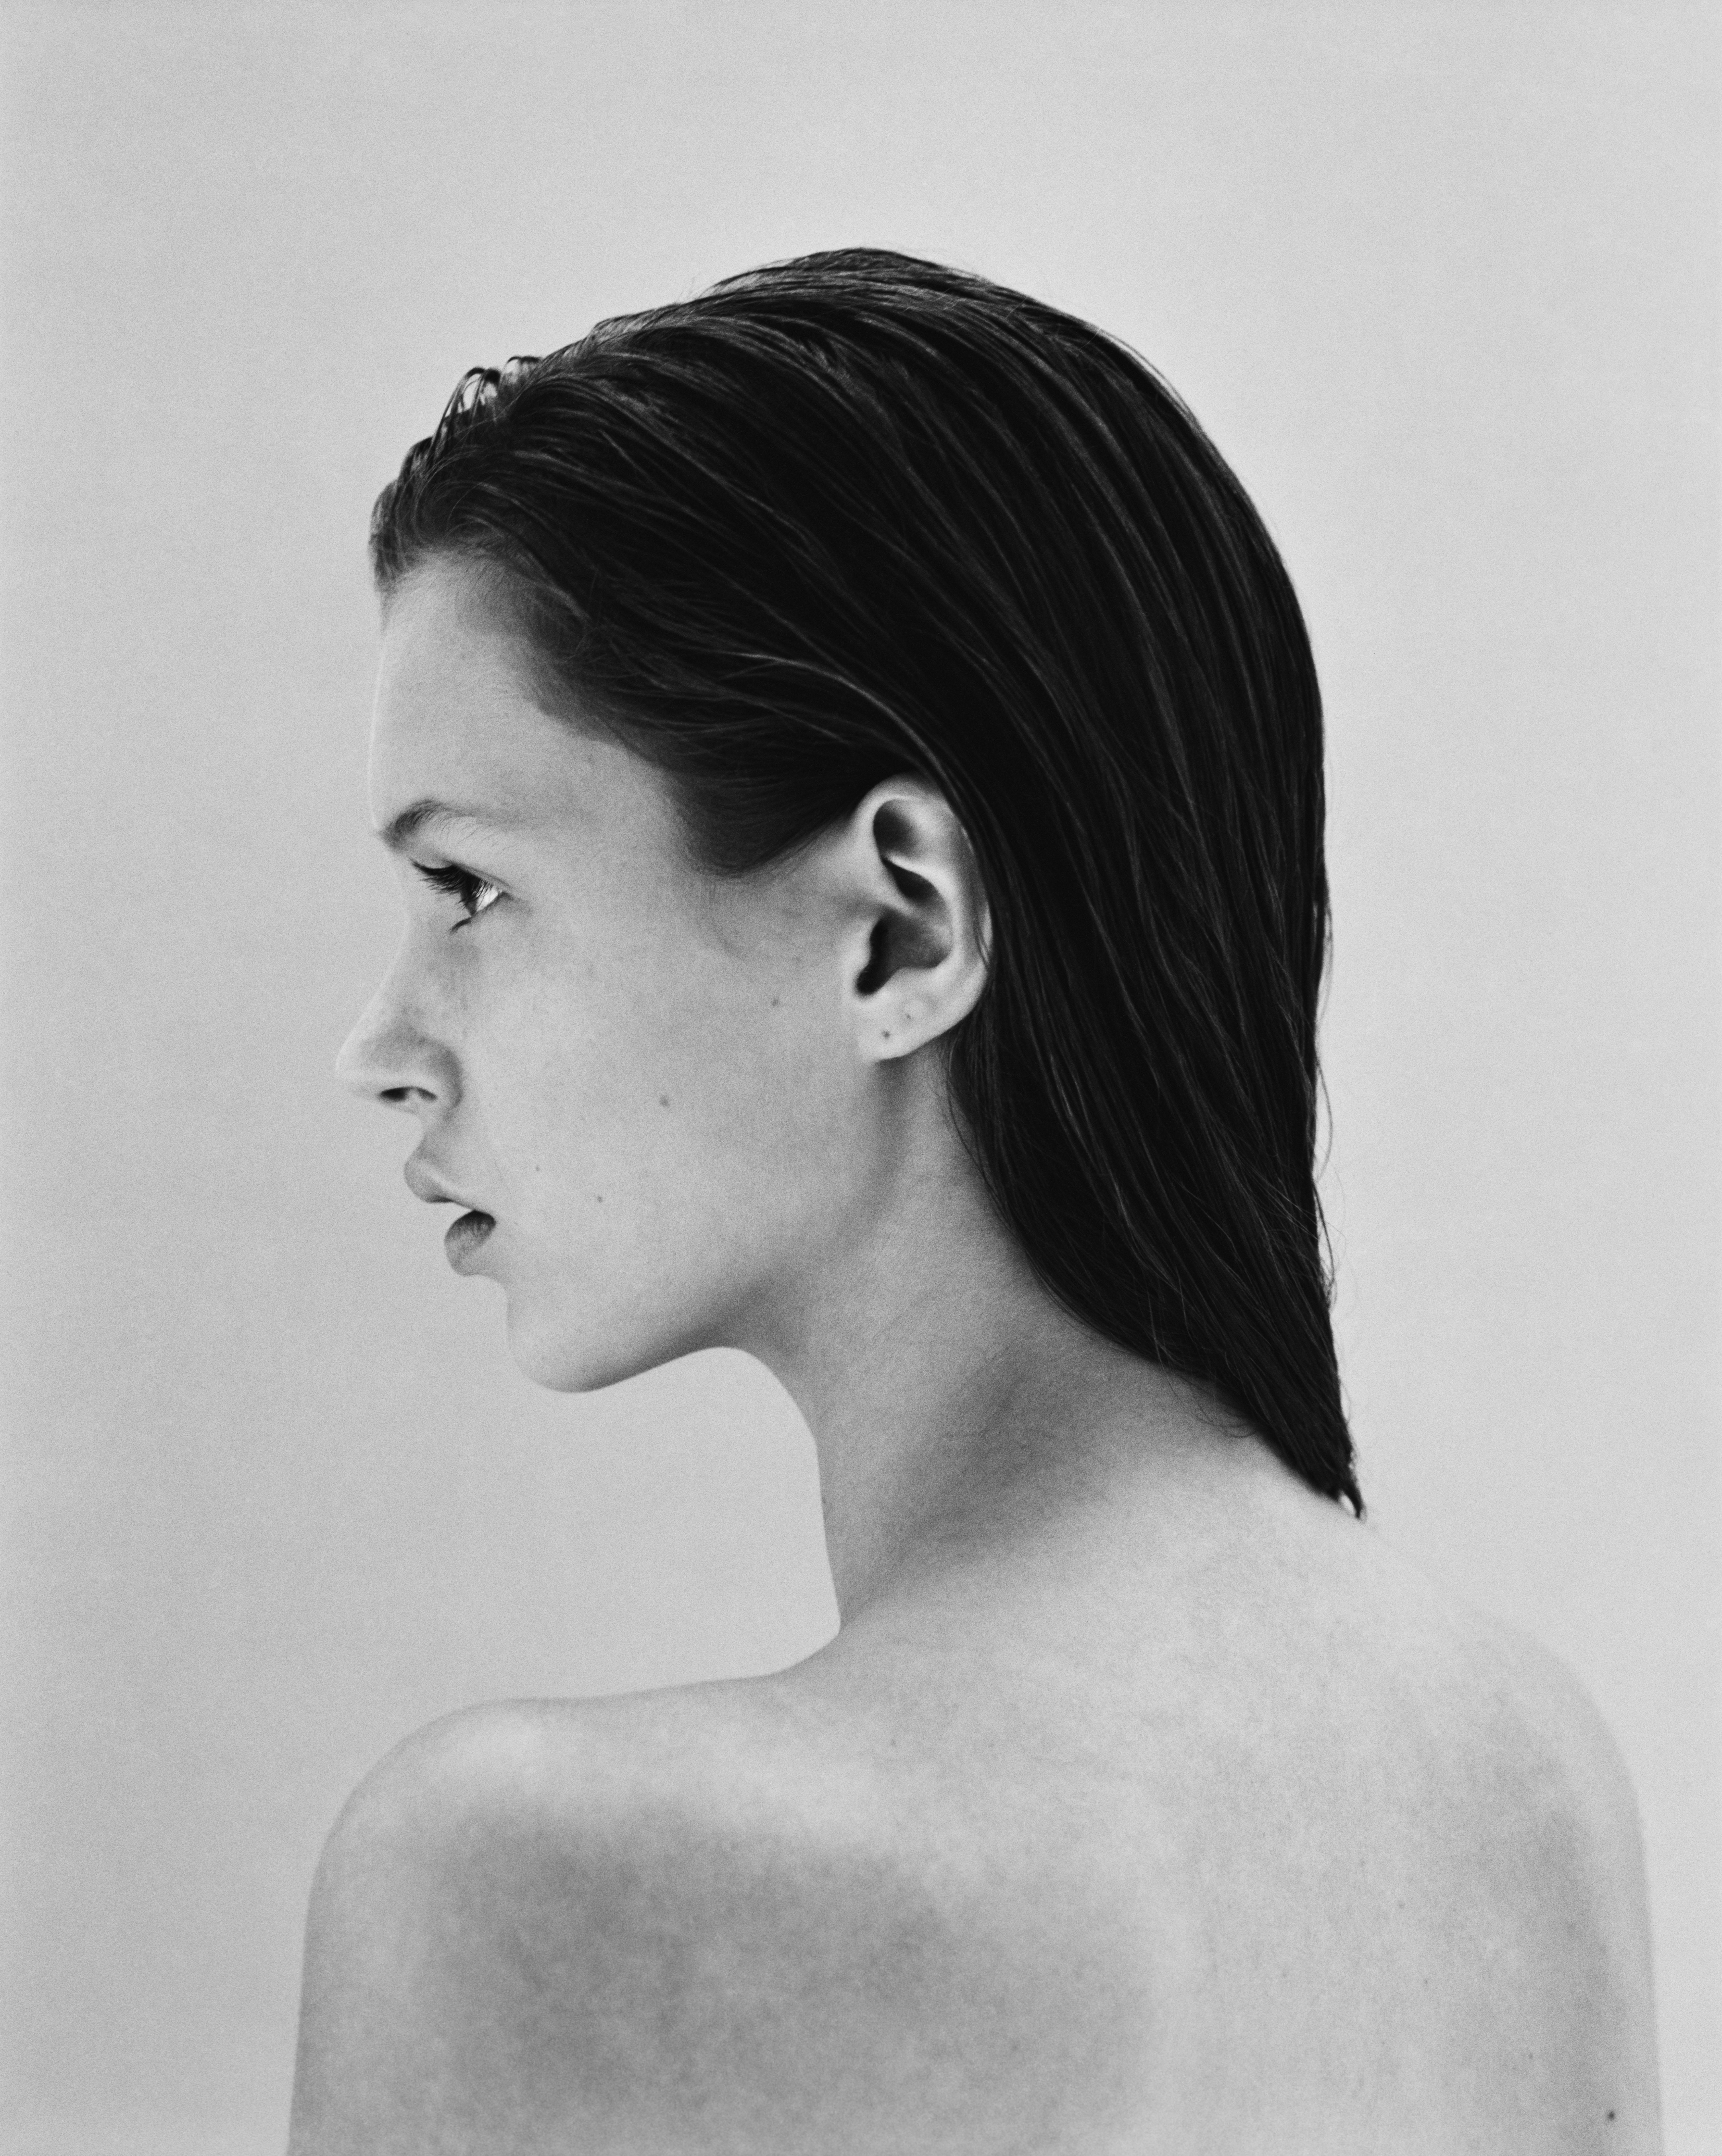 Jake Chessum Portrait Photograph – Kate Moss mit 16 Jahren